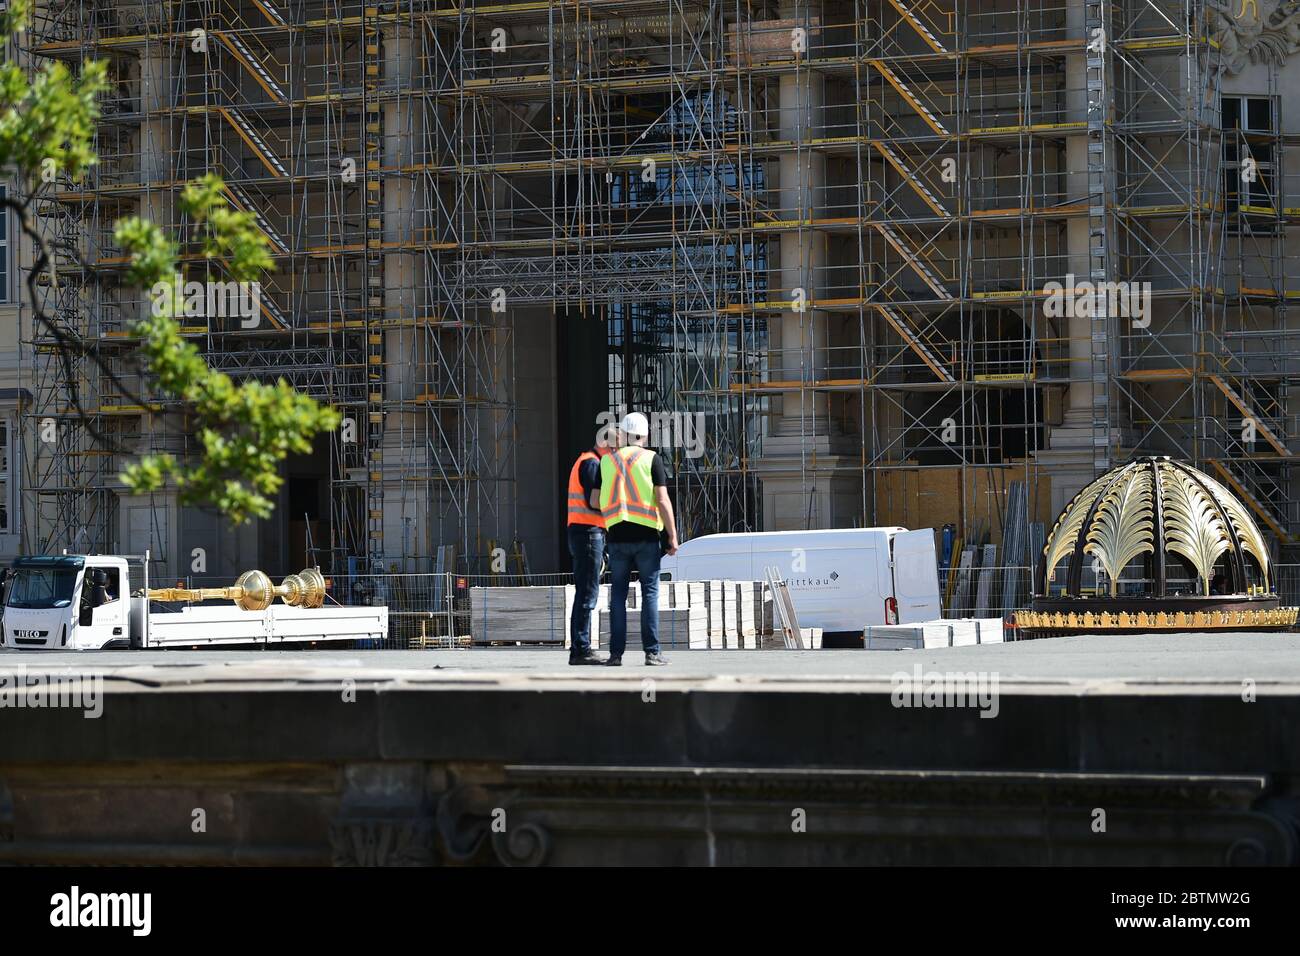 Berlin, Deutschland. Mai 2020. Vor dem Gebäude befinden sich das Kreuz und die Palmkuppel für die Spitze des Humboldt Forums. Sie sollen am Freitag an der Kuppel befestigt werden. Quelle: Sven Braun/dpa/Alamy Live News Stockfoto